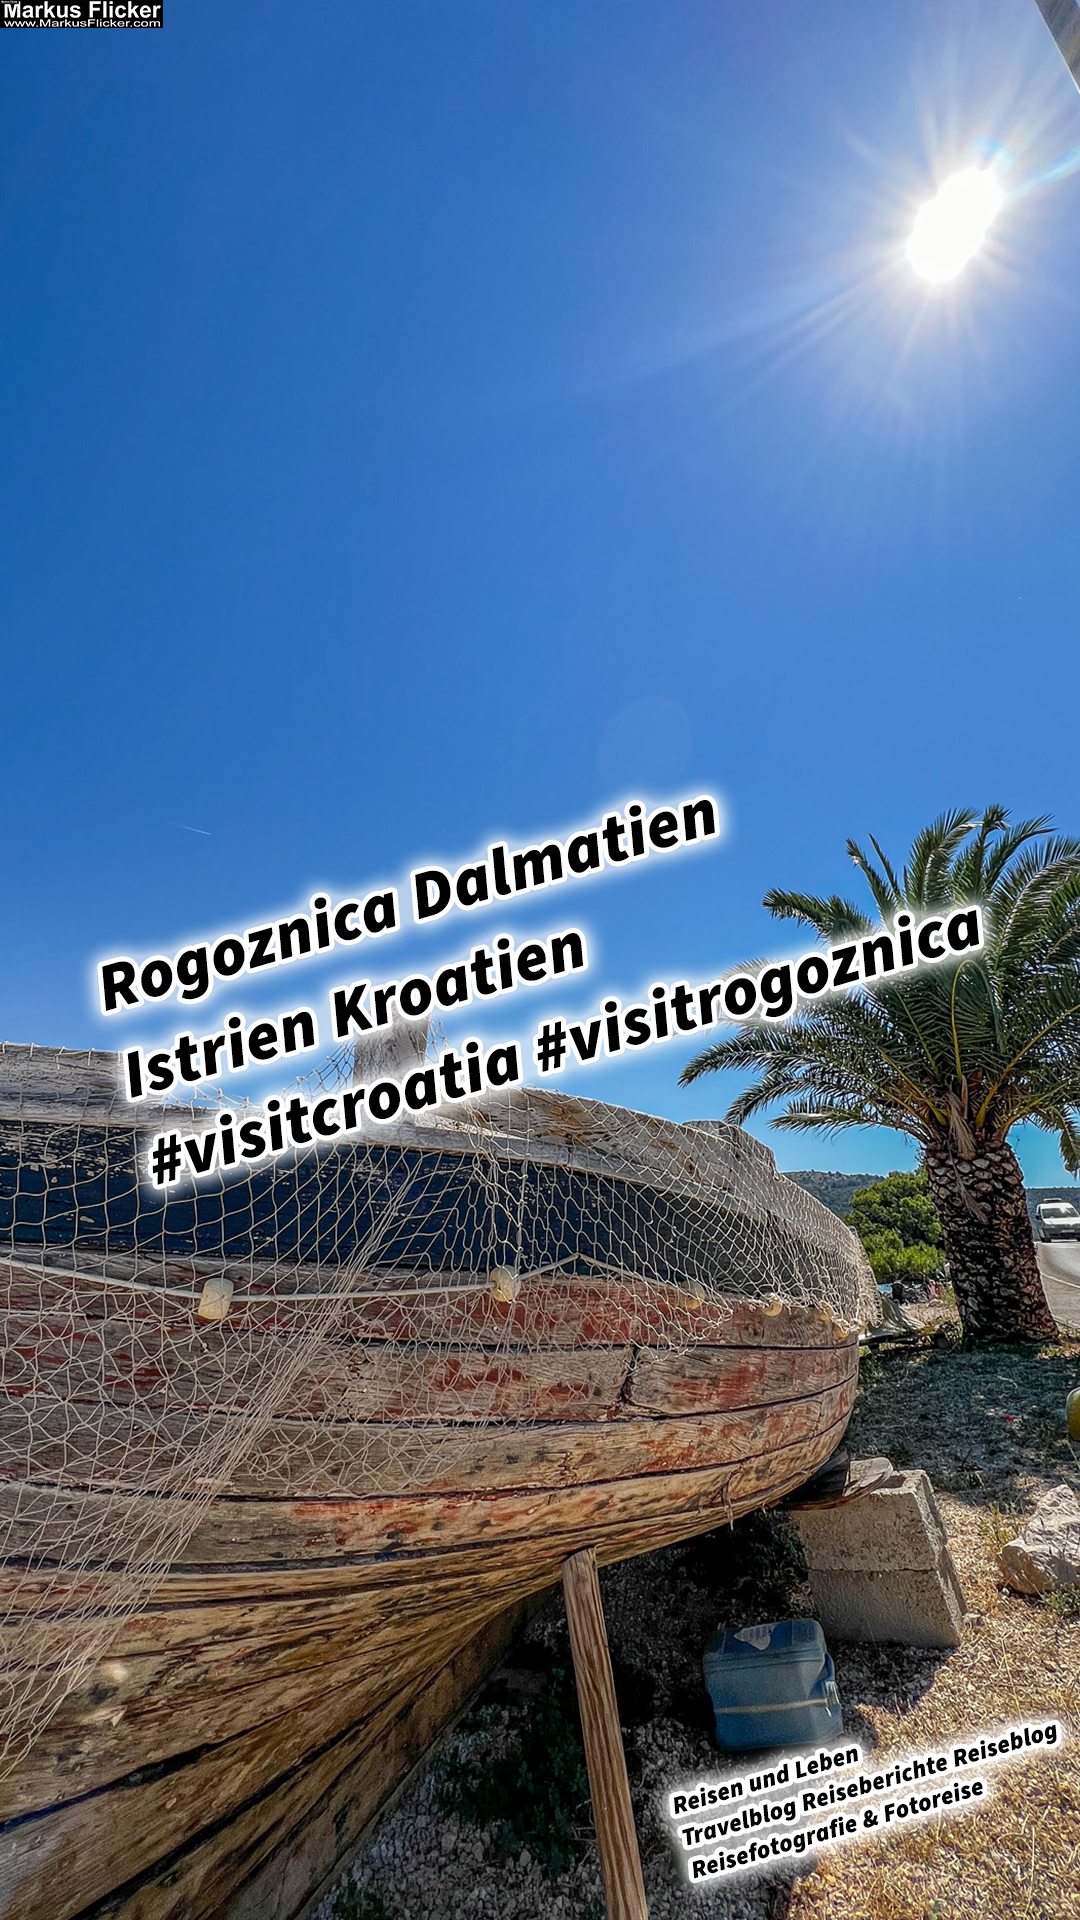 Rogoznica Dalmatien Istrien Kroatien #visitcroatia #visitrogoznica